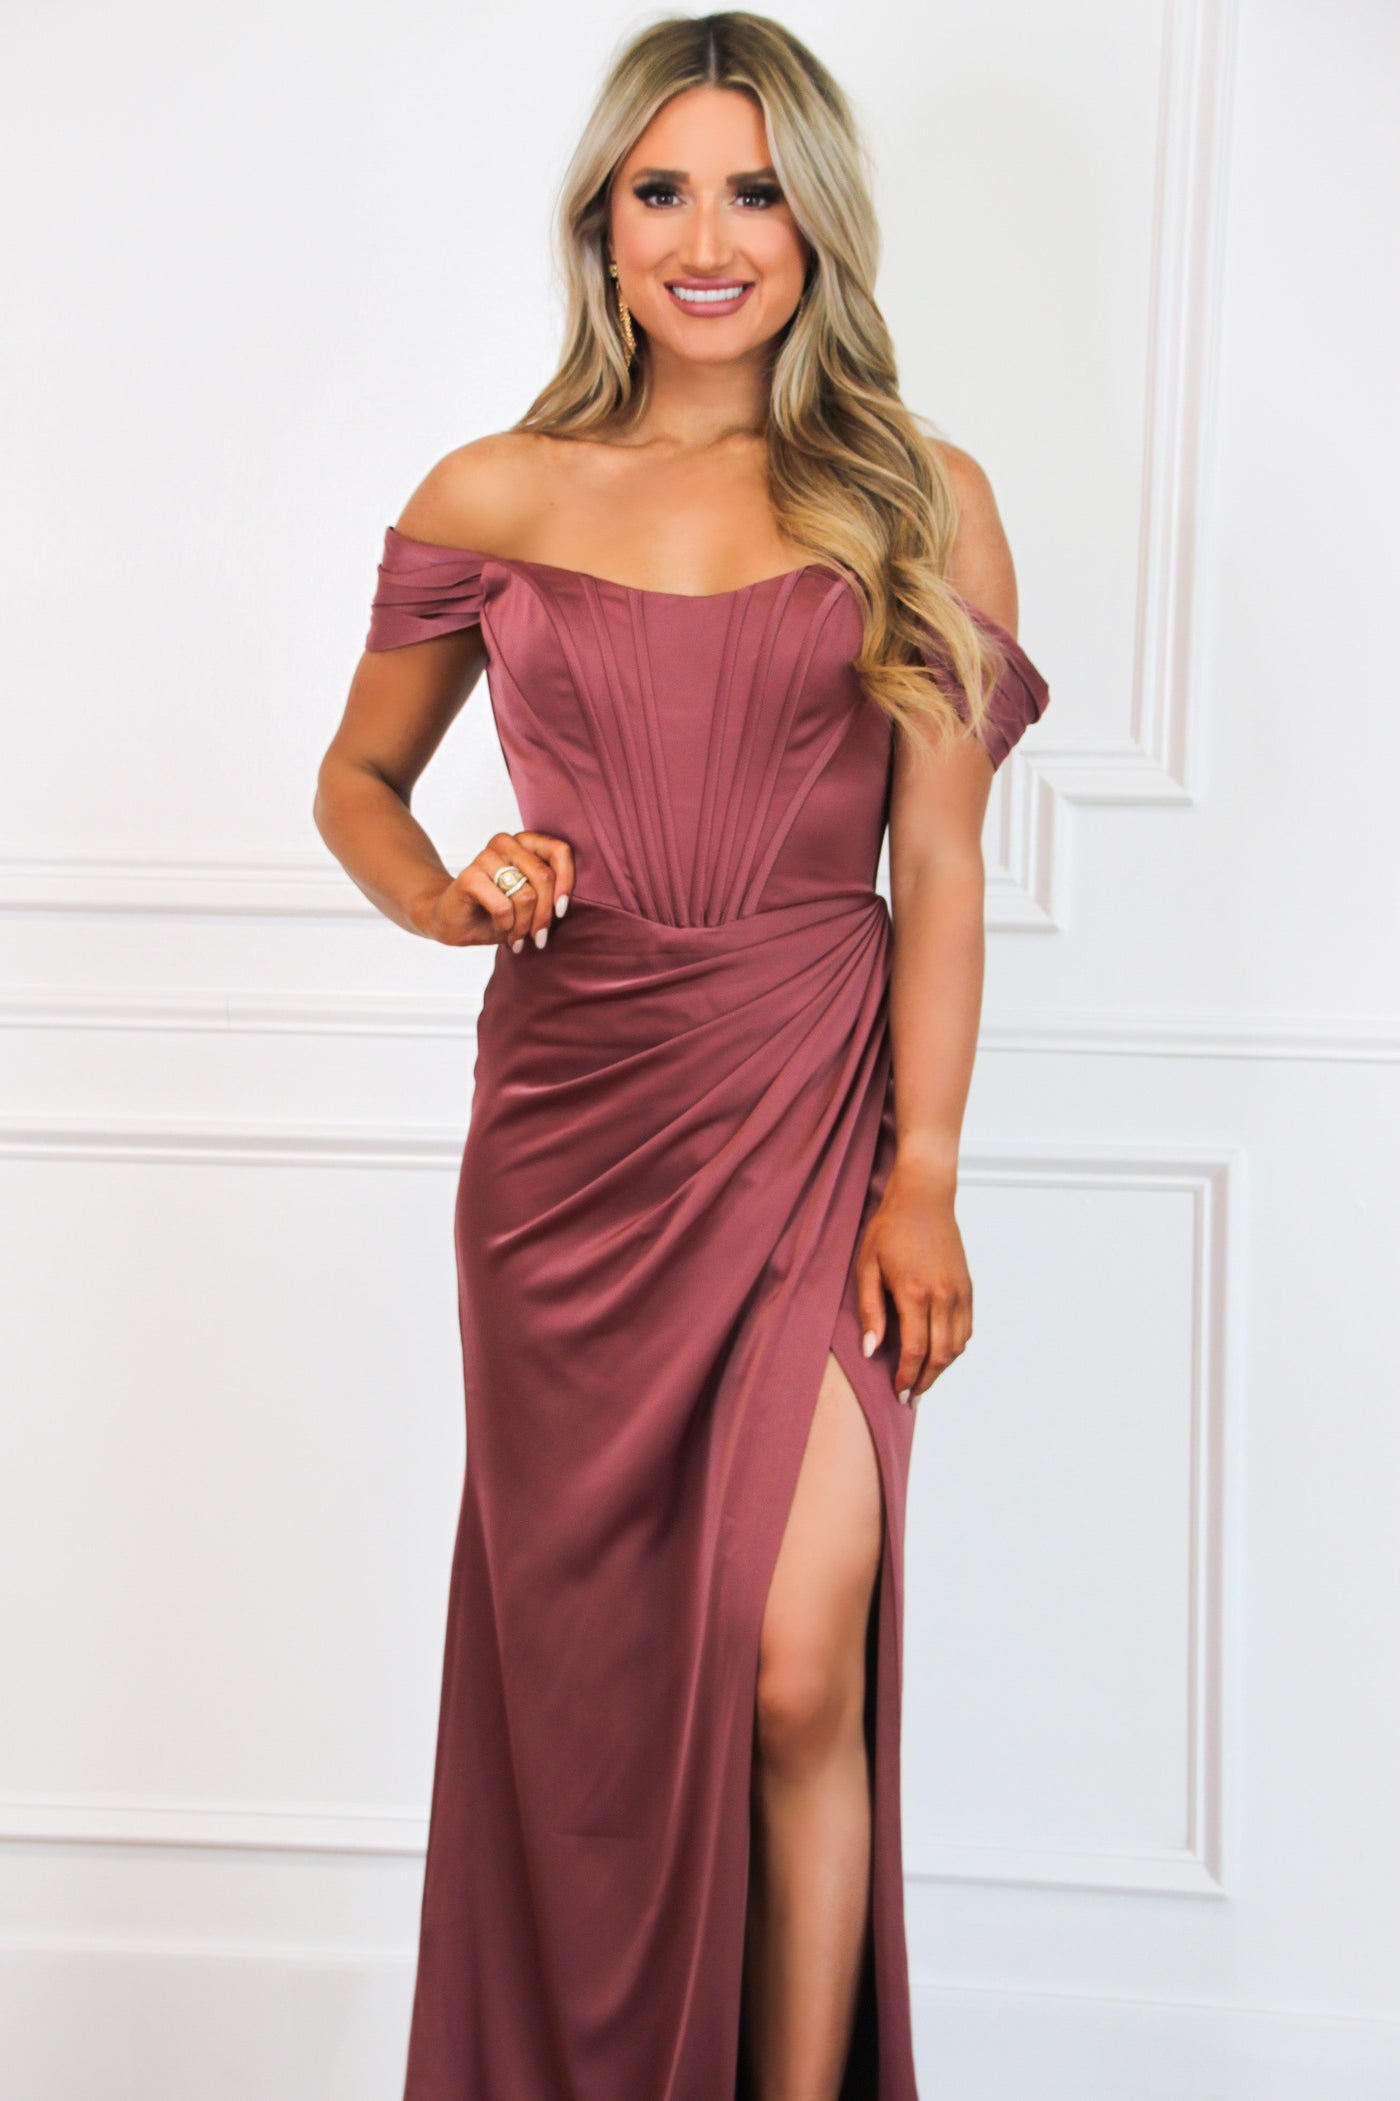 Serenity Bustier Off Shoulder Formal Dress: Rosewood - Bella and Bloom Boutique